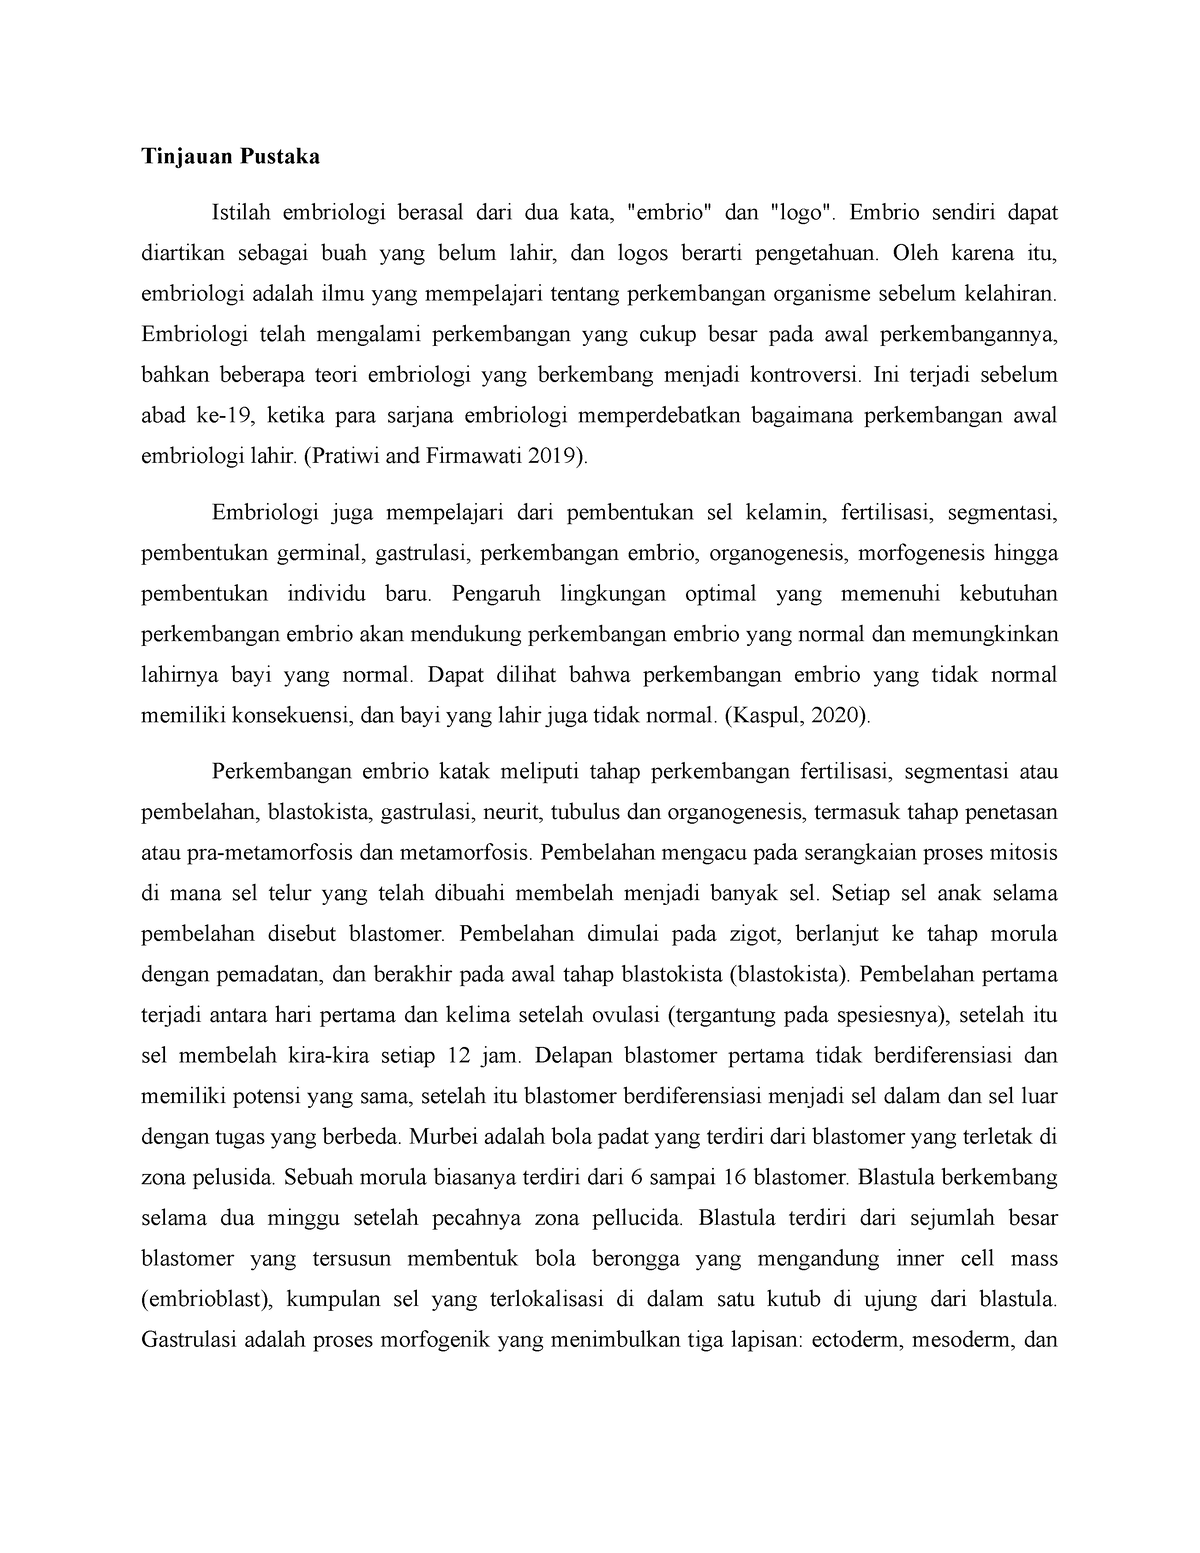 mr birling grade 9 essay pdf